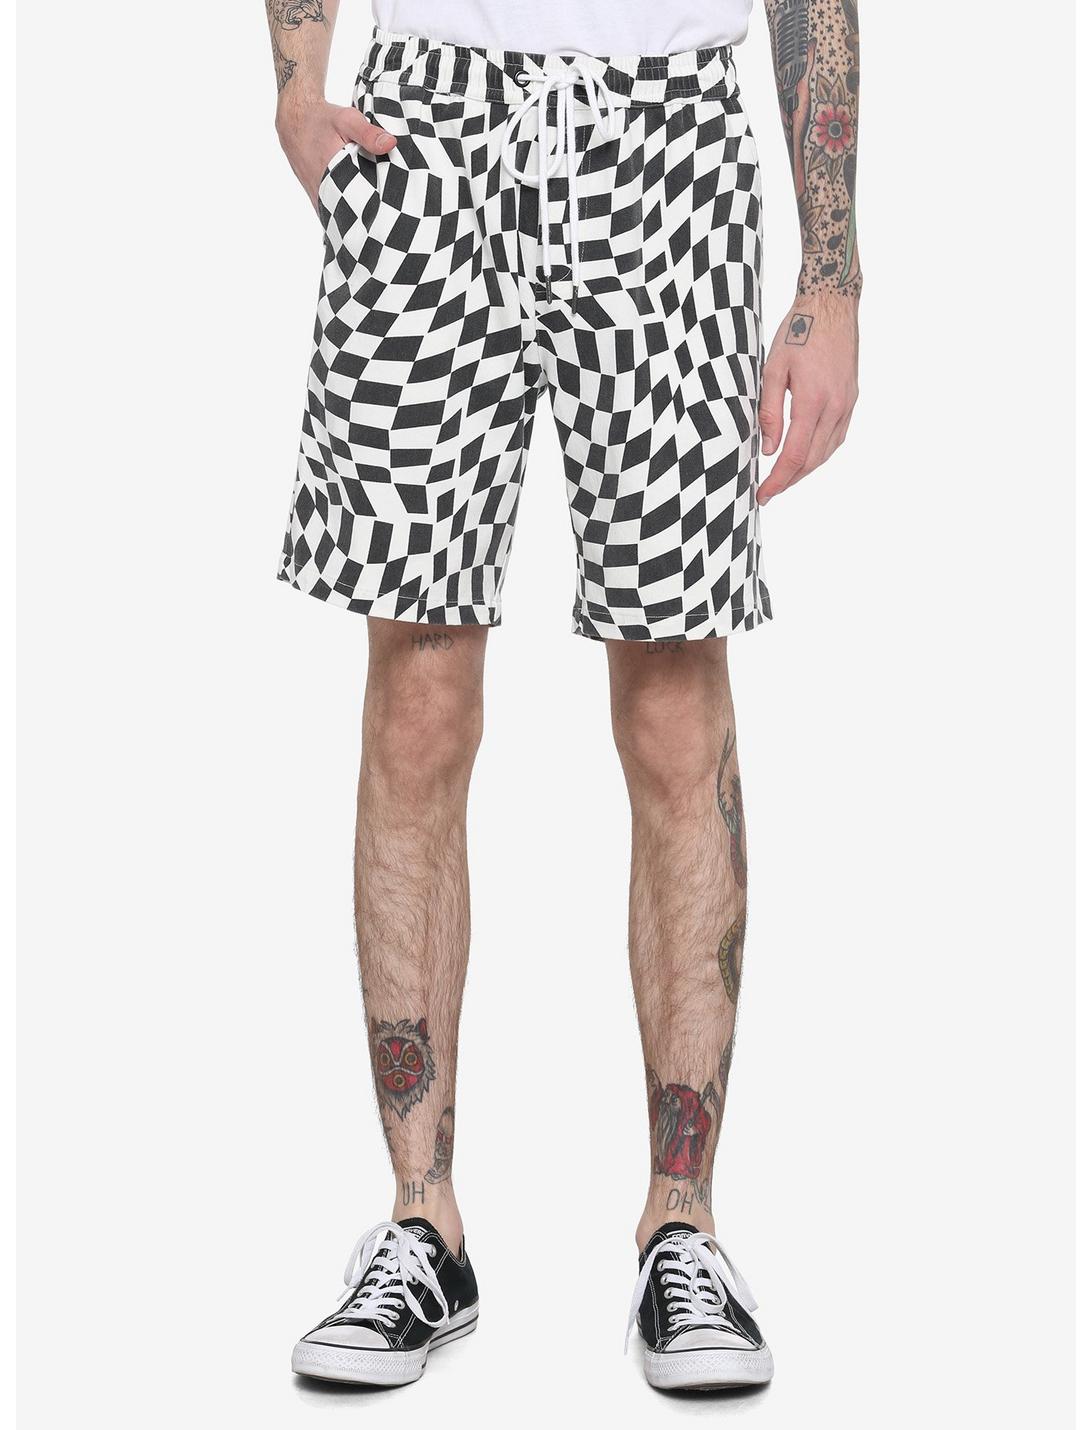 Warped Black & White Checkered Jogger Shorts, Check 1 2 White Black, hi-res